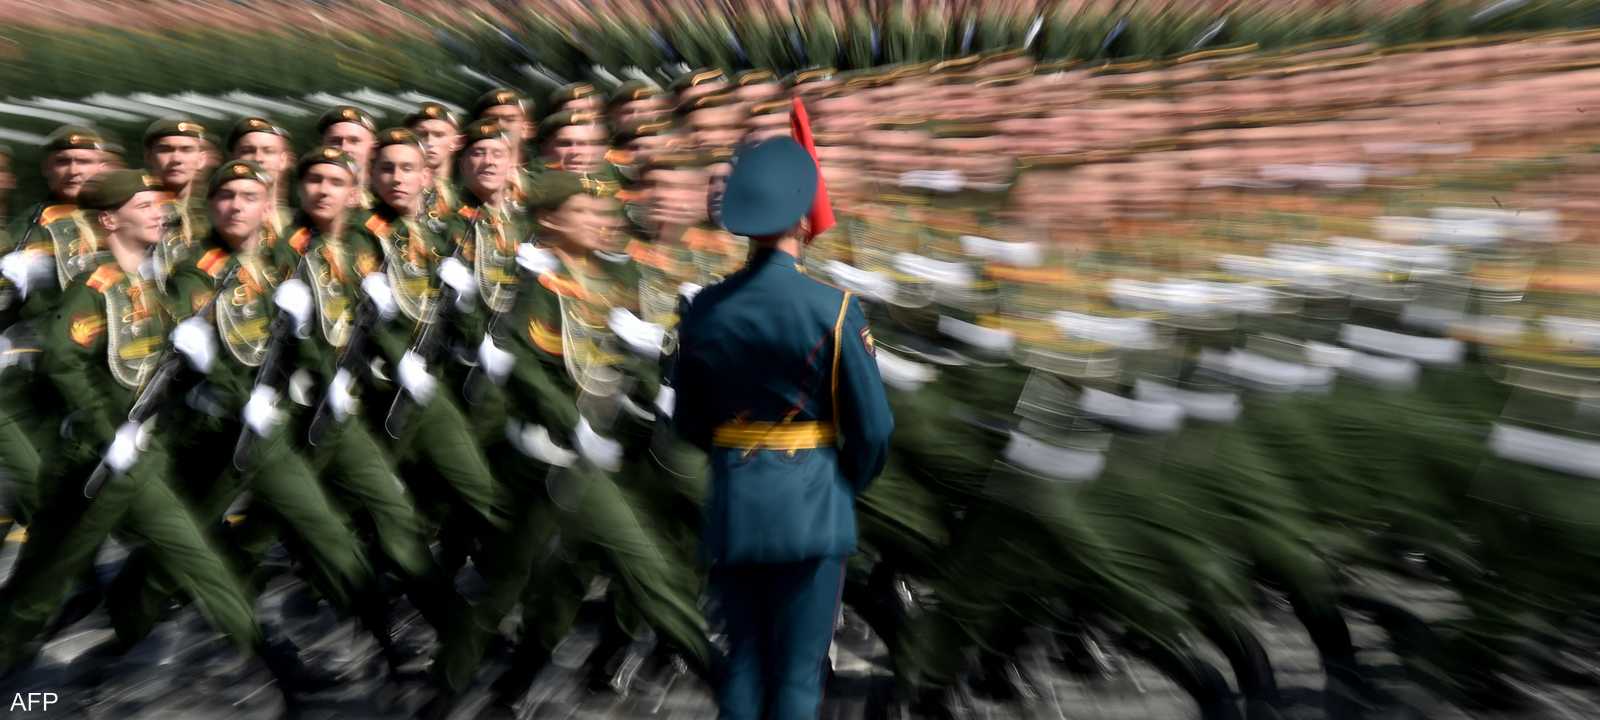 حملة التجنيد العسكري تنظم مرتين سنويا في روسيا